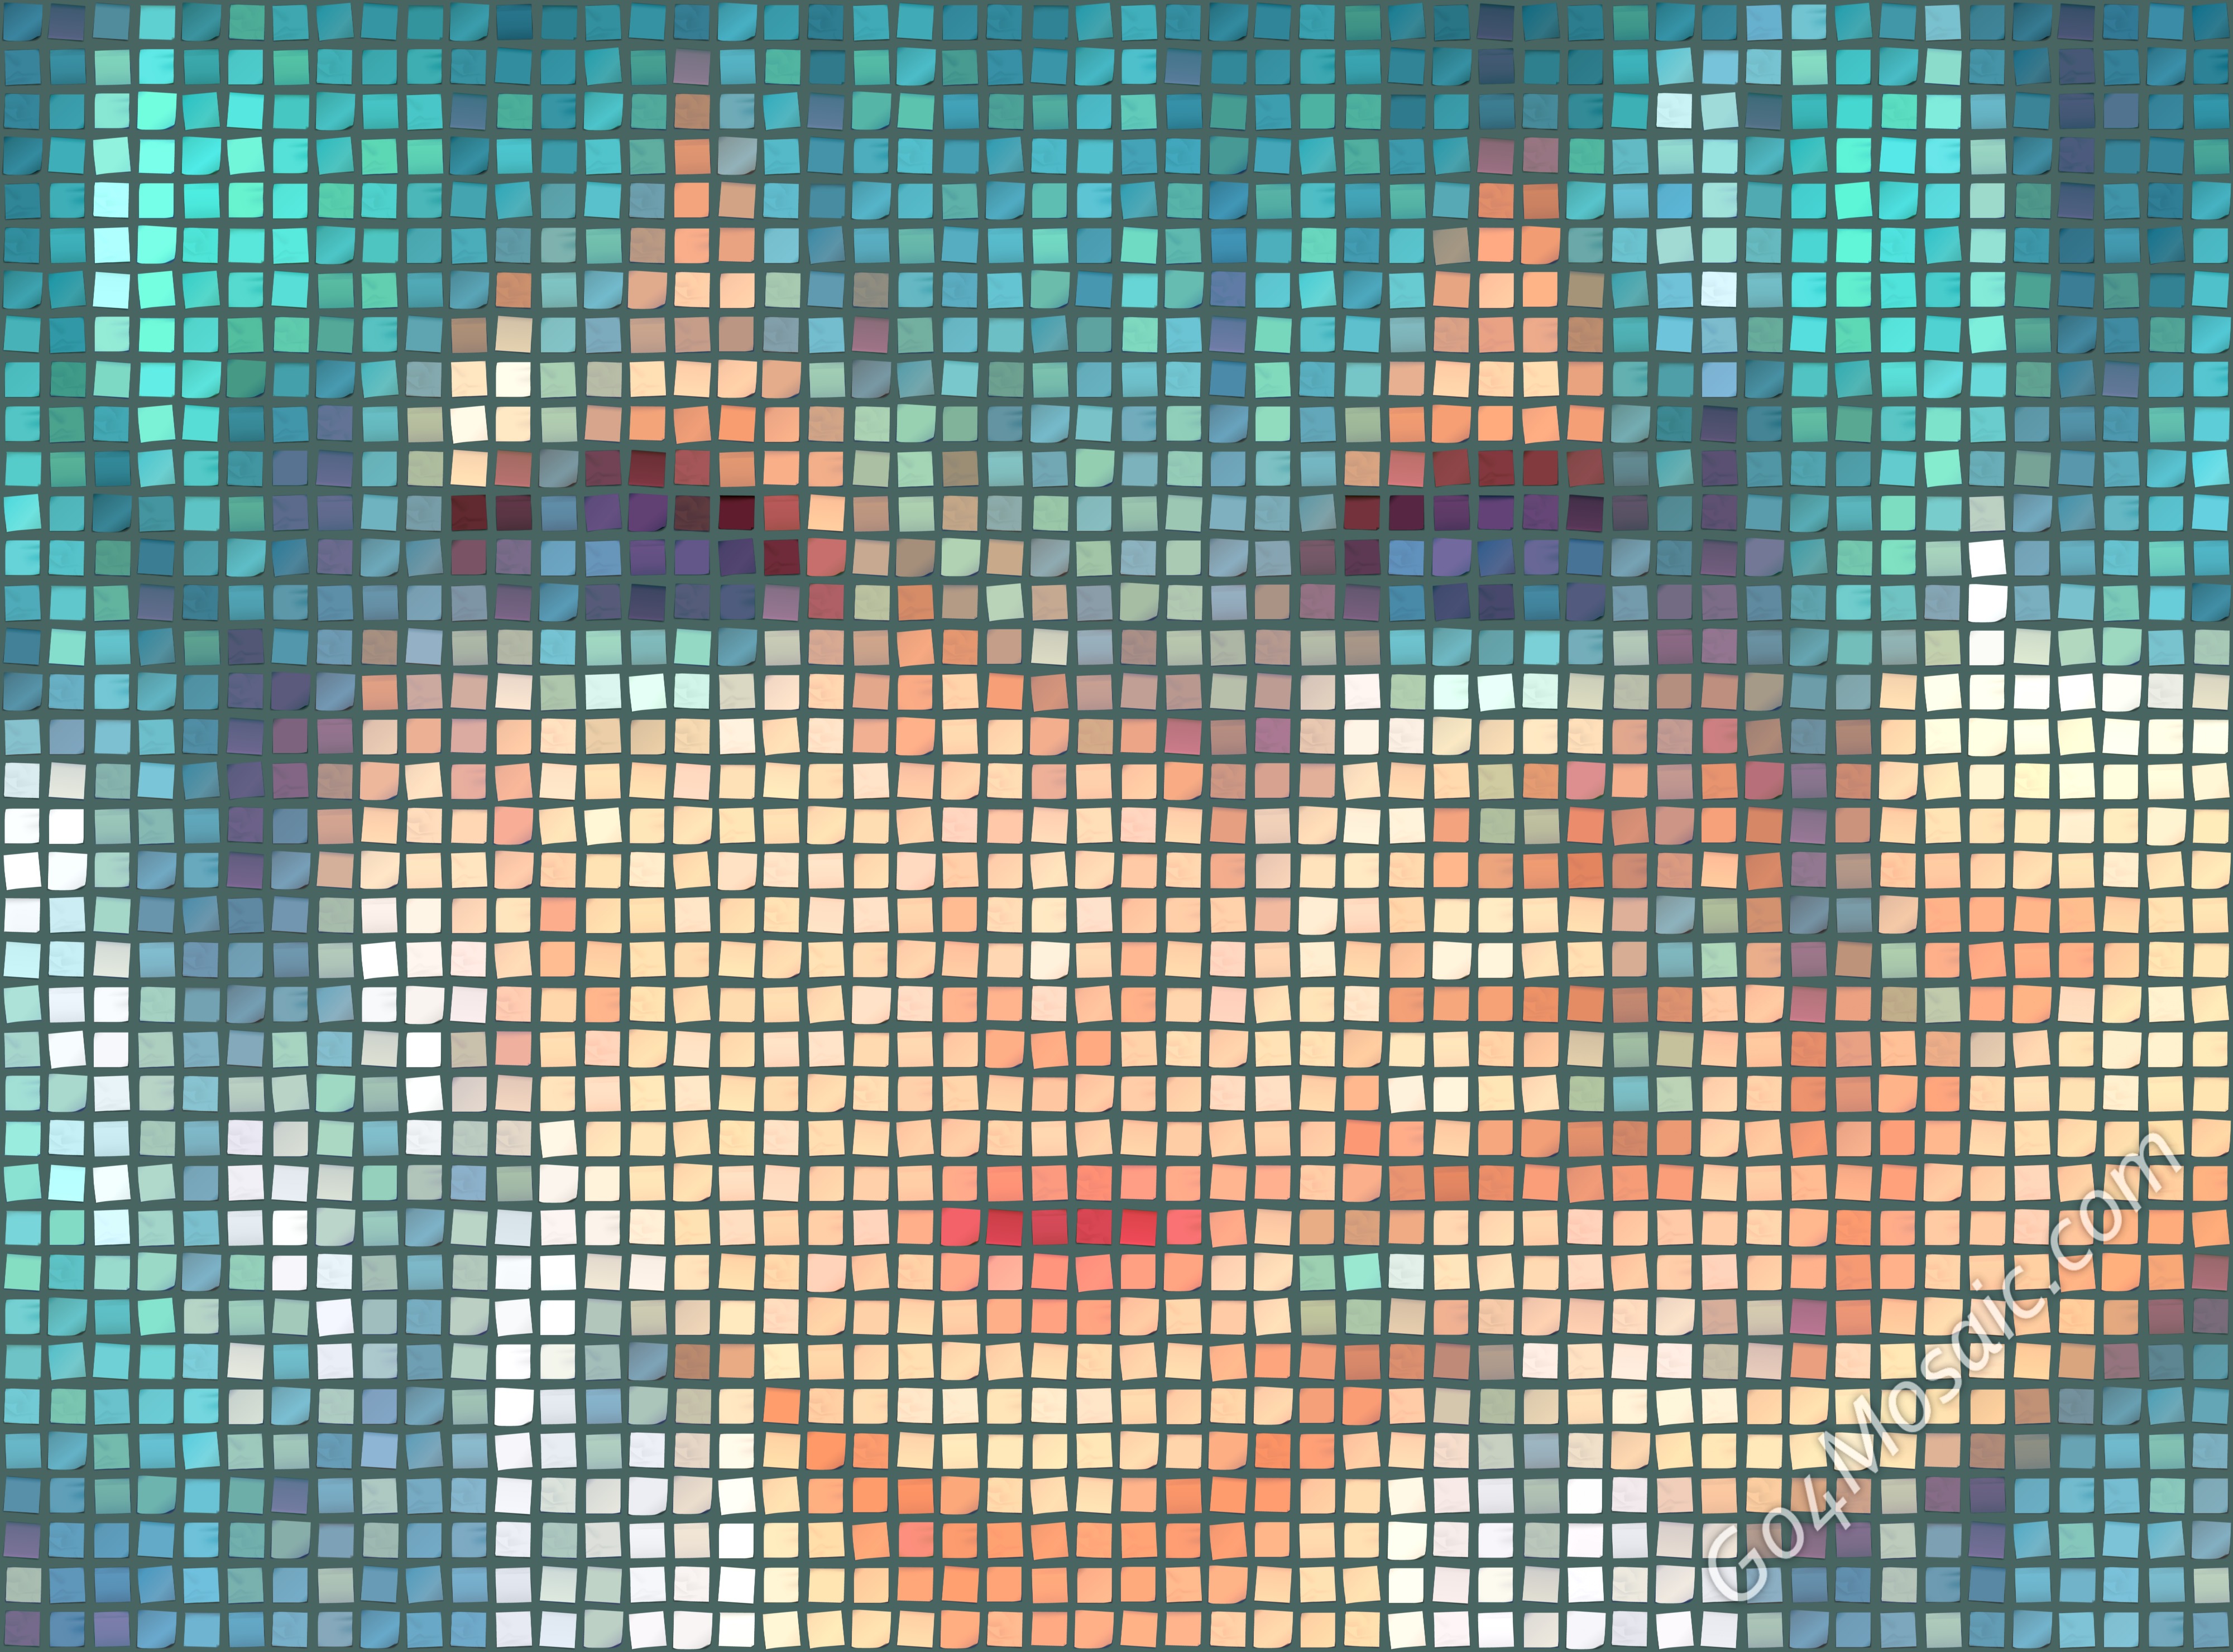 Hatsune Miku mosaic 4000px